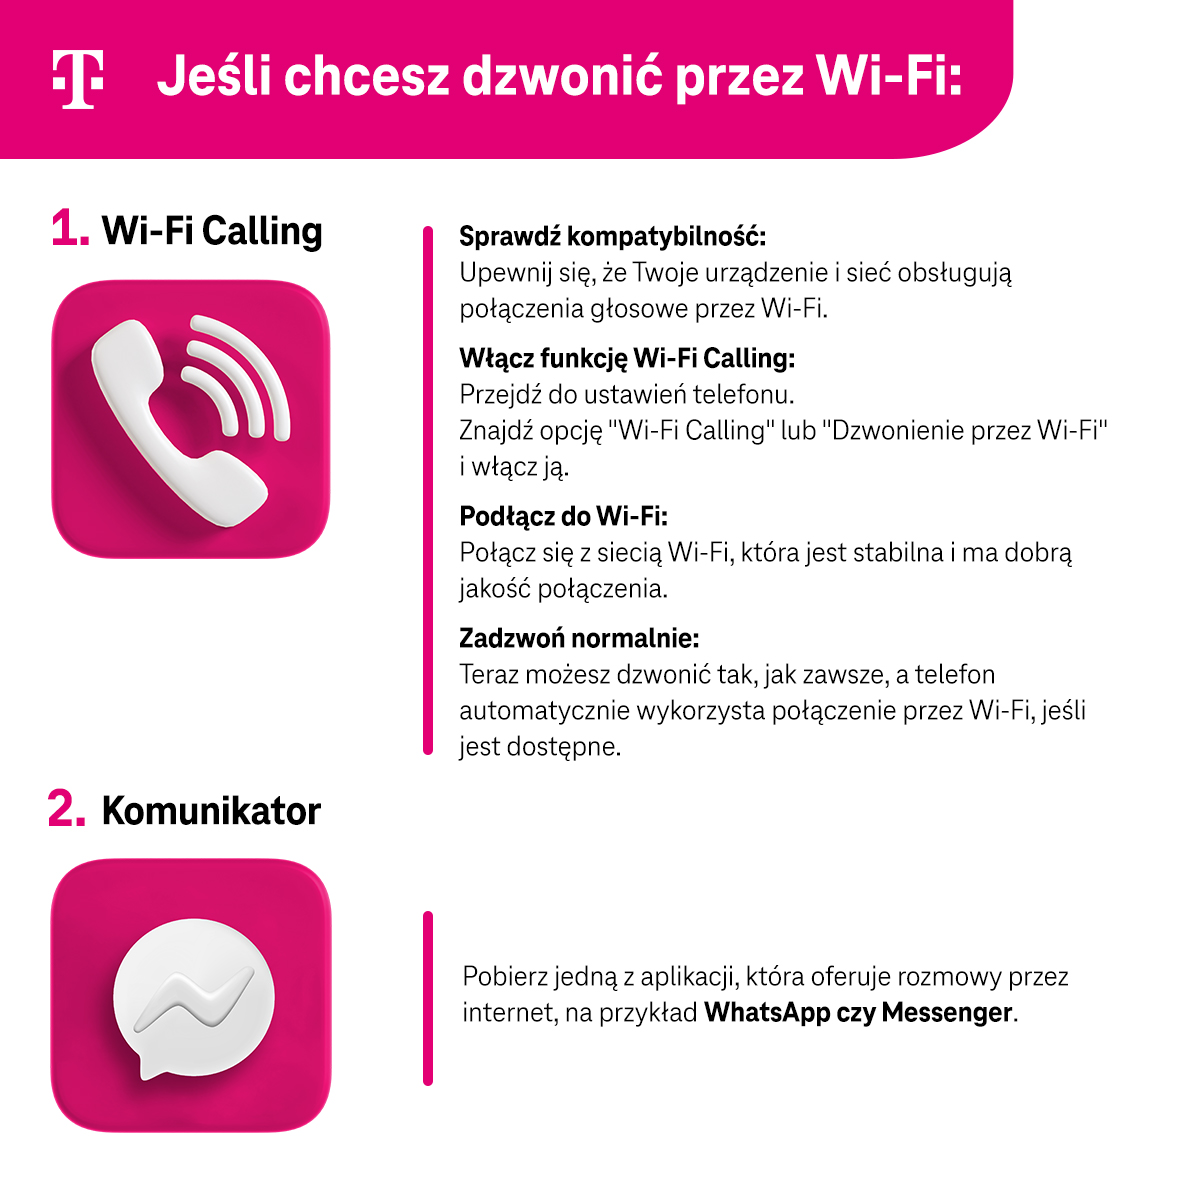 Jeśli chcesz dzwonić przez Wi-Fi: Wi-Fi Calling, Komunikator - infografika.